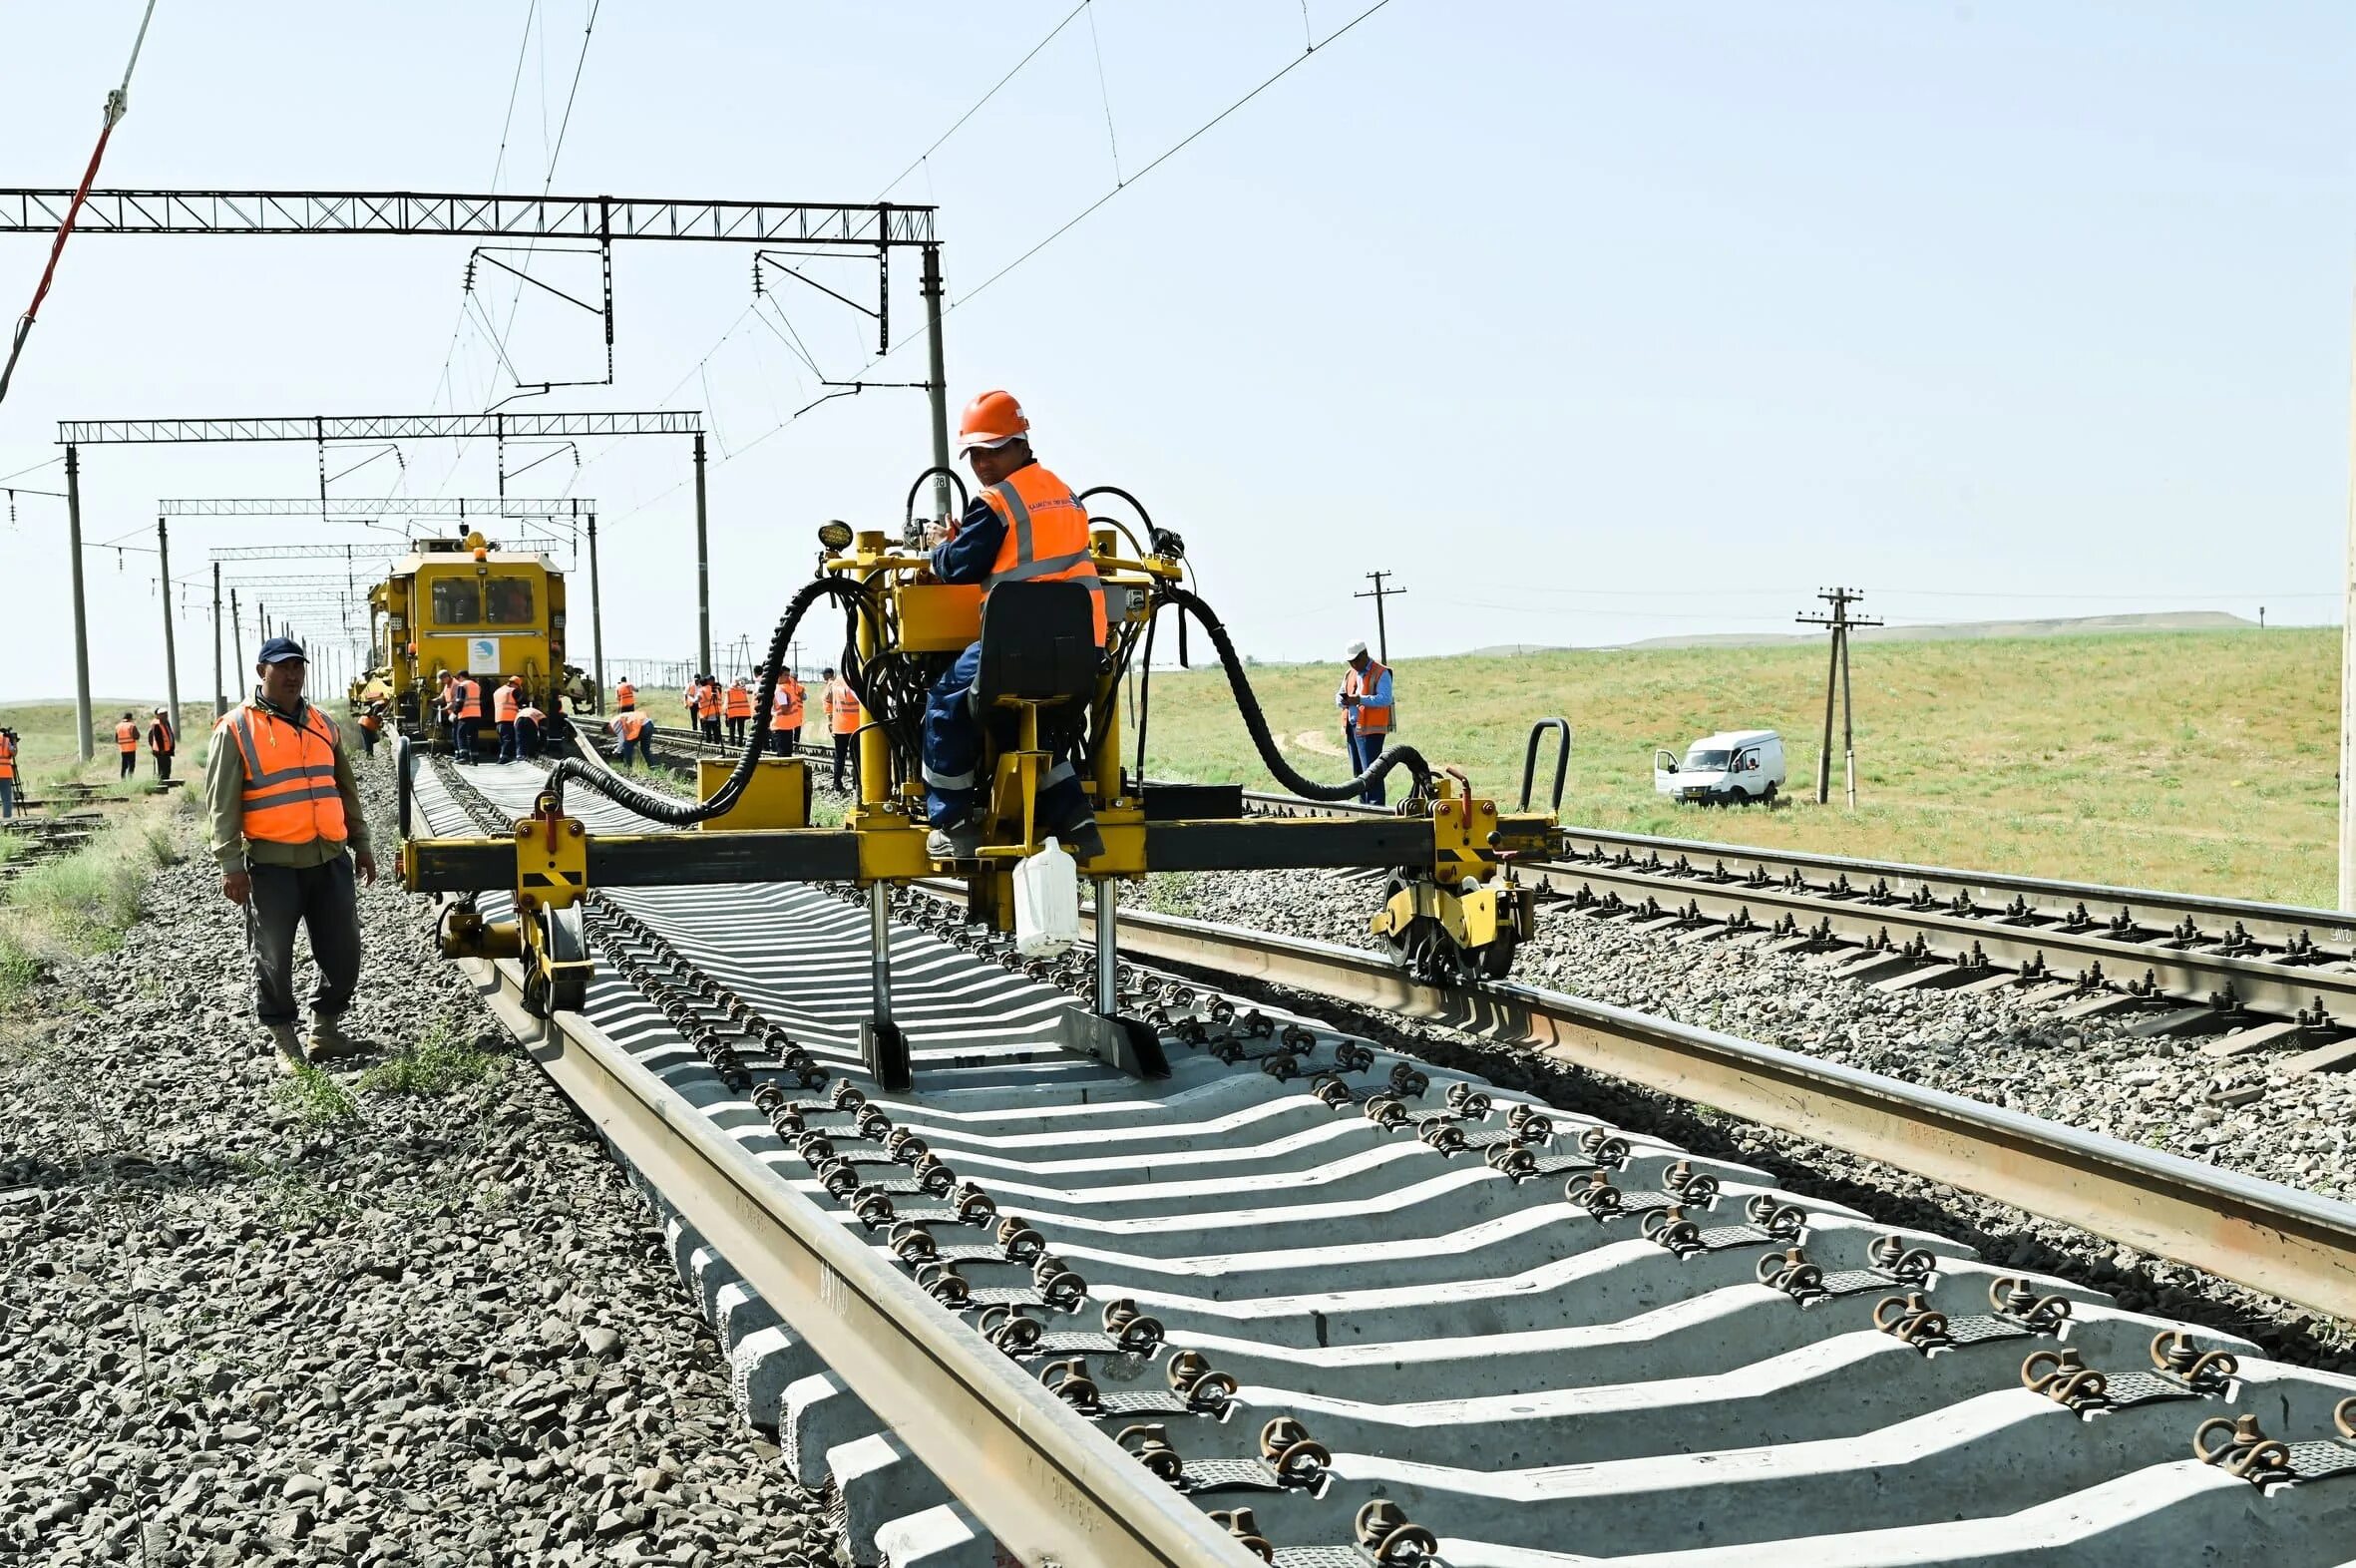 Движение поездов ограничено. Казахские железные дороги. ЖД железнодорожников. Железнодорожные пути фото. Капитальный ремонт железнодорожного полотна.